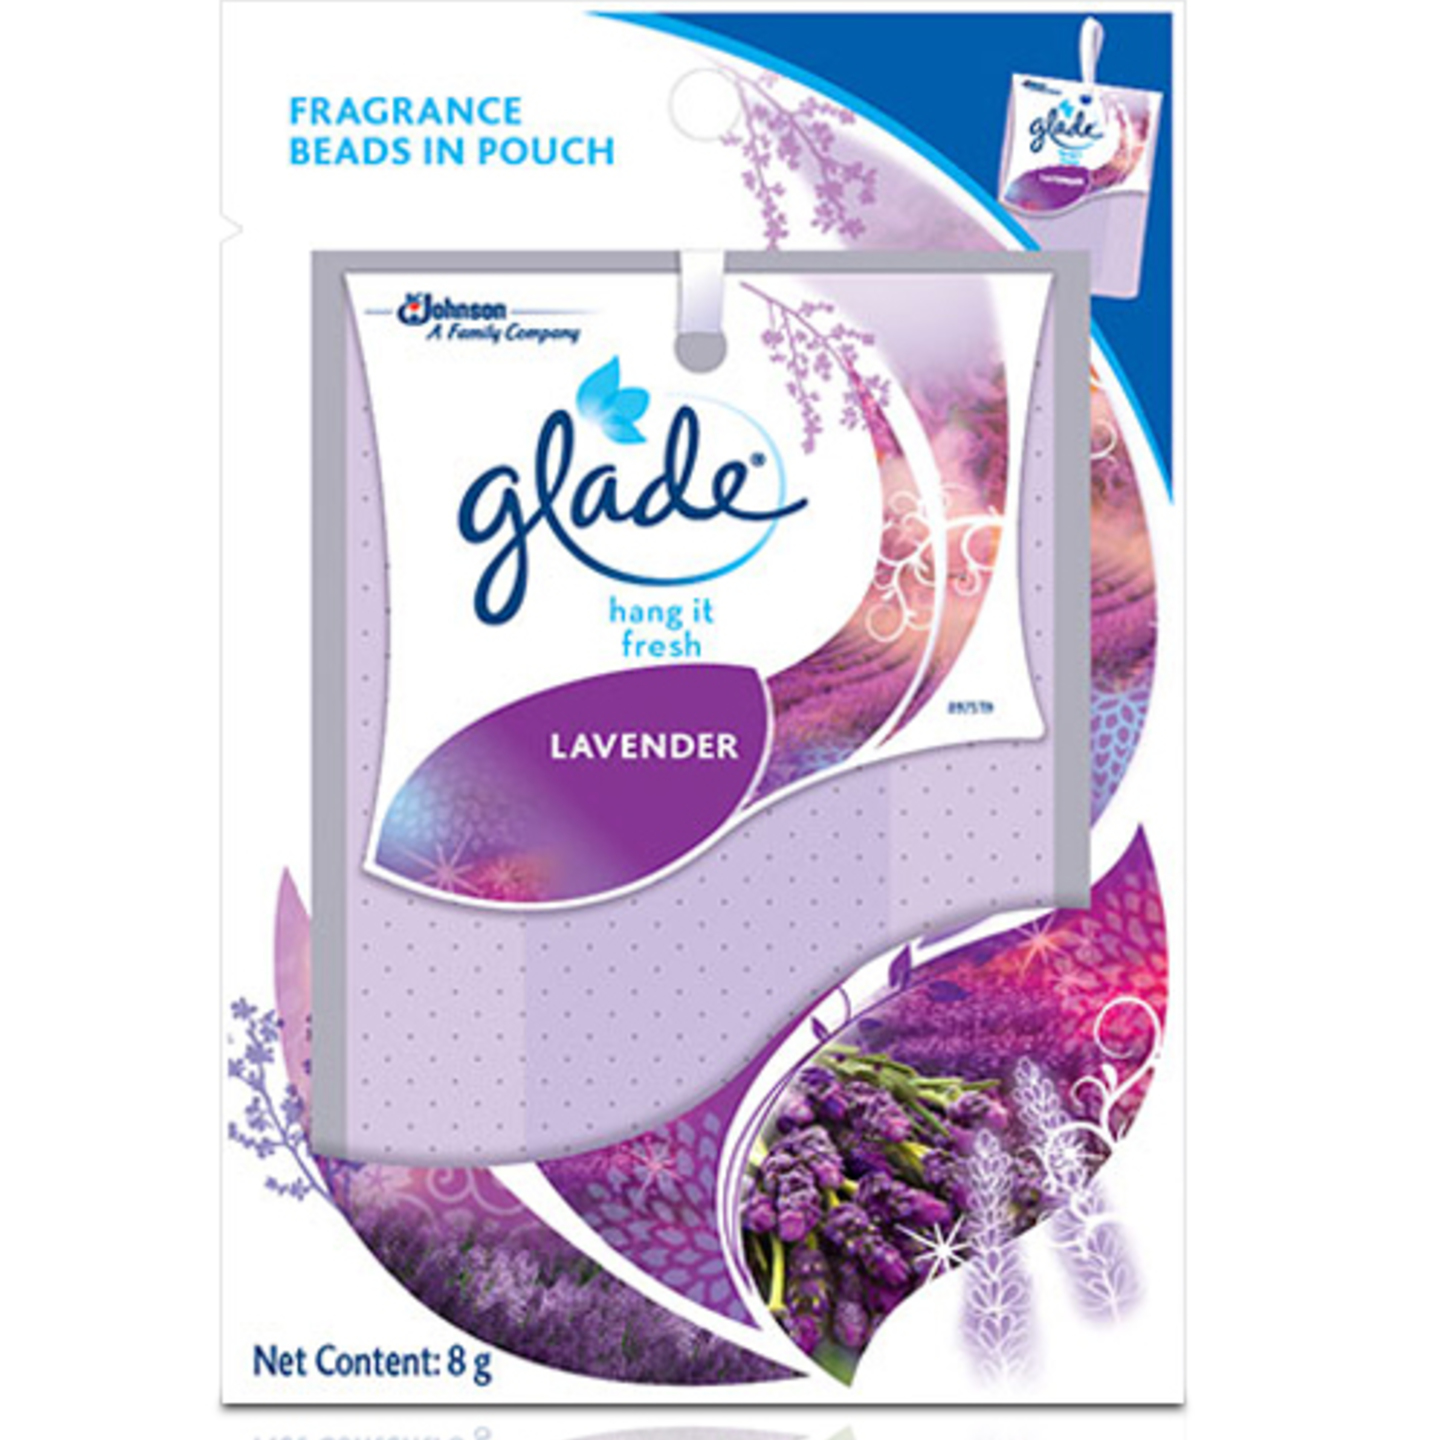 Glade Hang it Fresh Lavender Fragrance